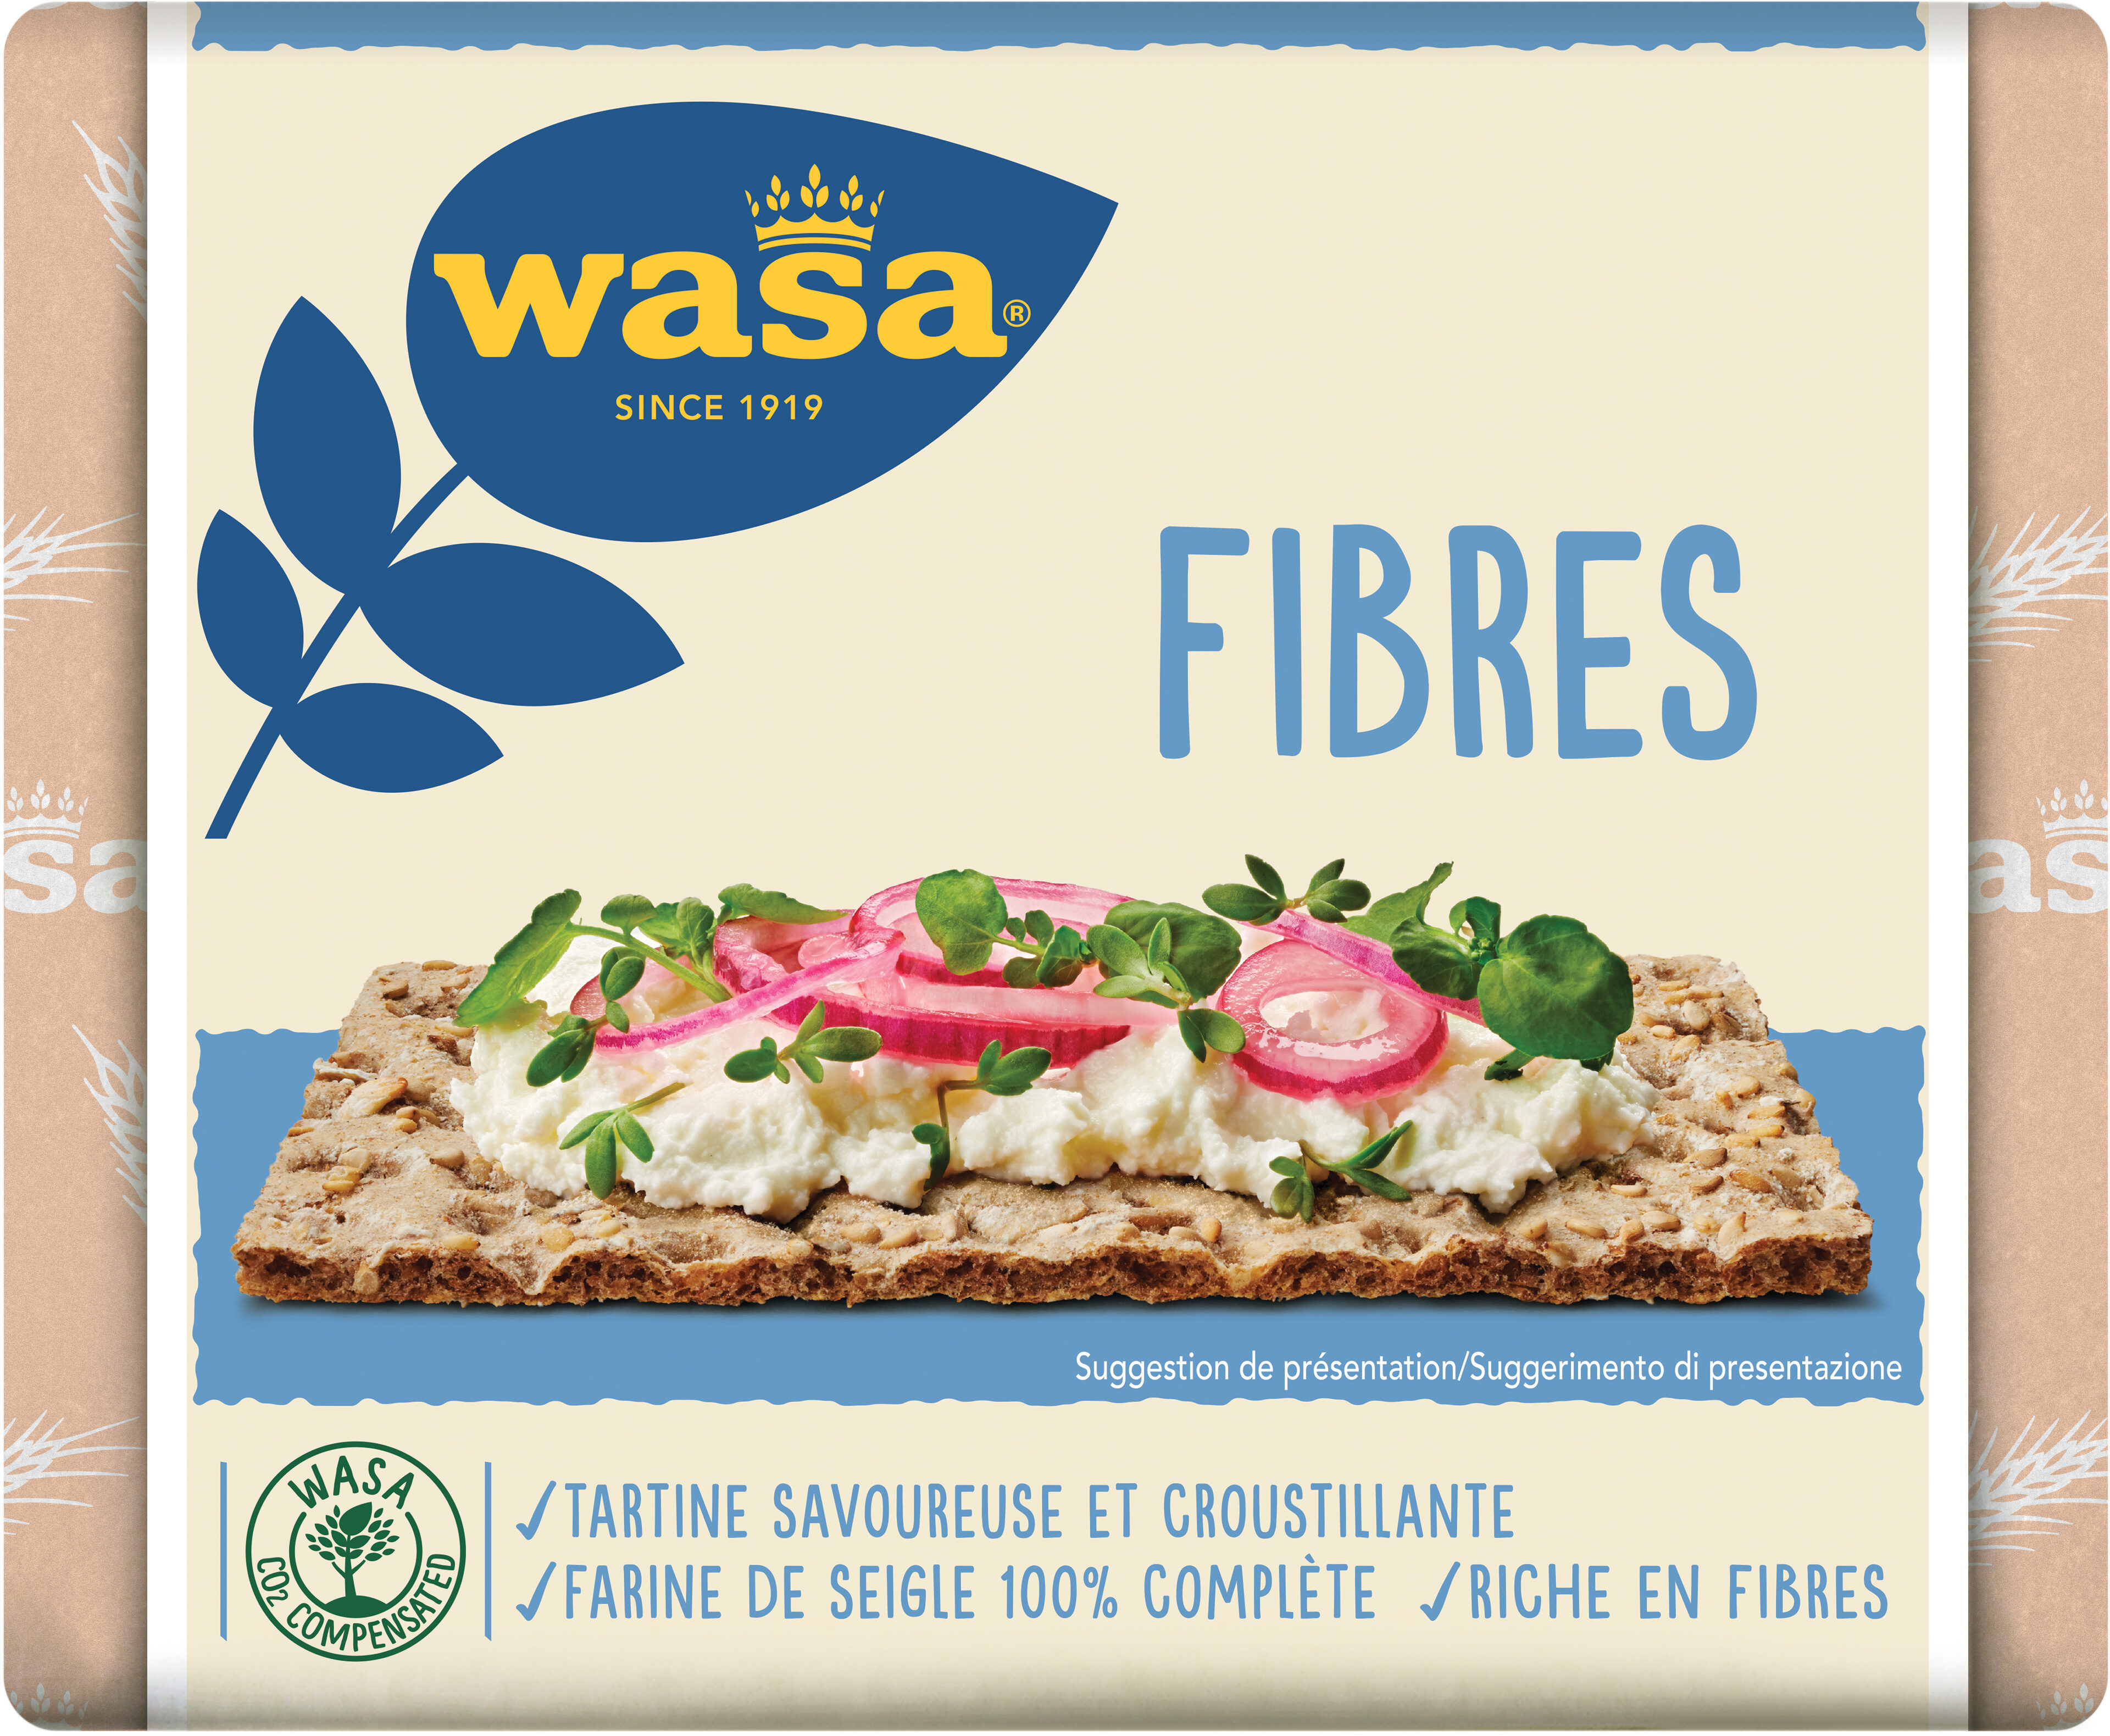 Wasa tartine croustillante fibres 230g - Product - fr